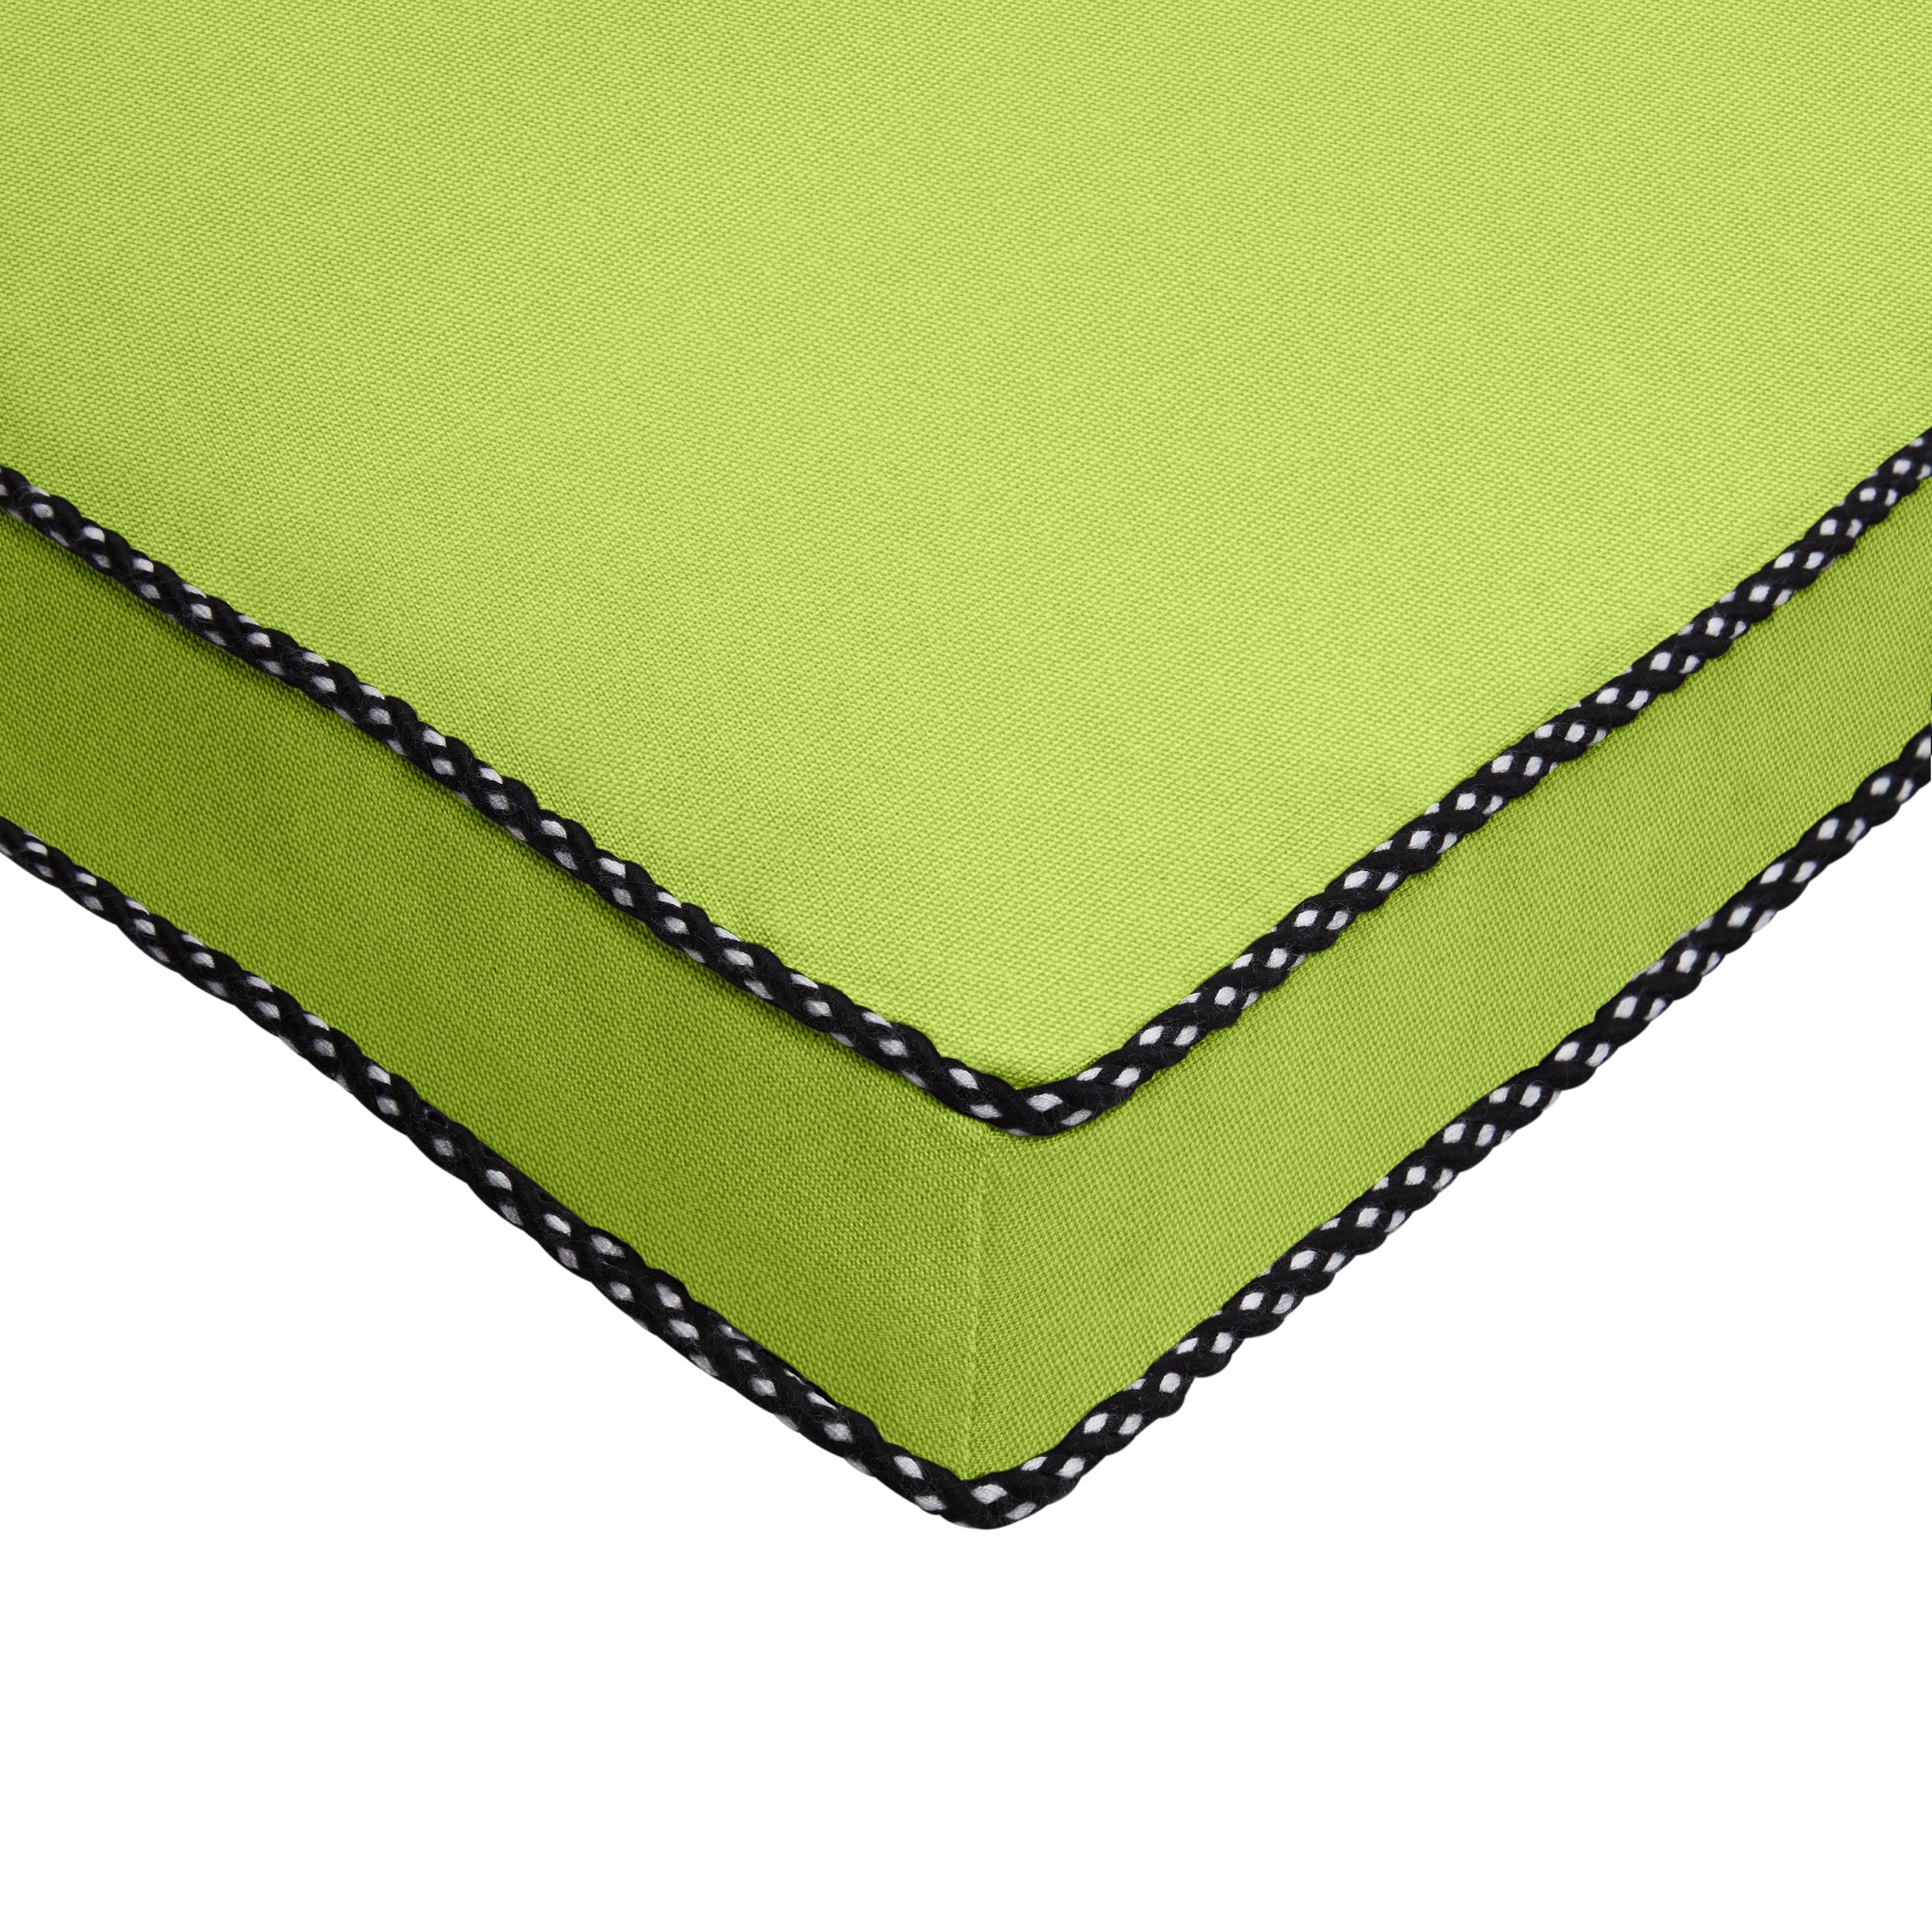 Sunbrella Braided Cord Cushion - Sorra Home